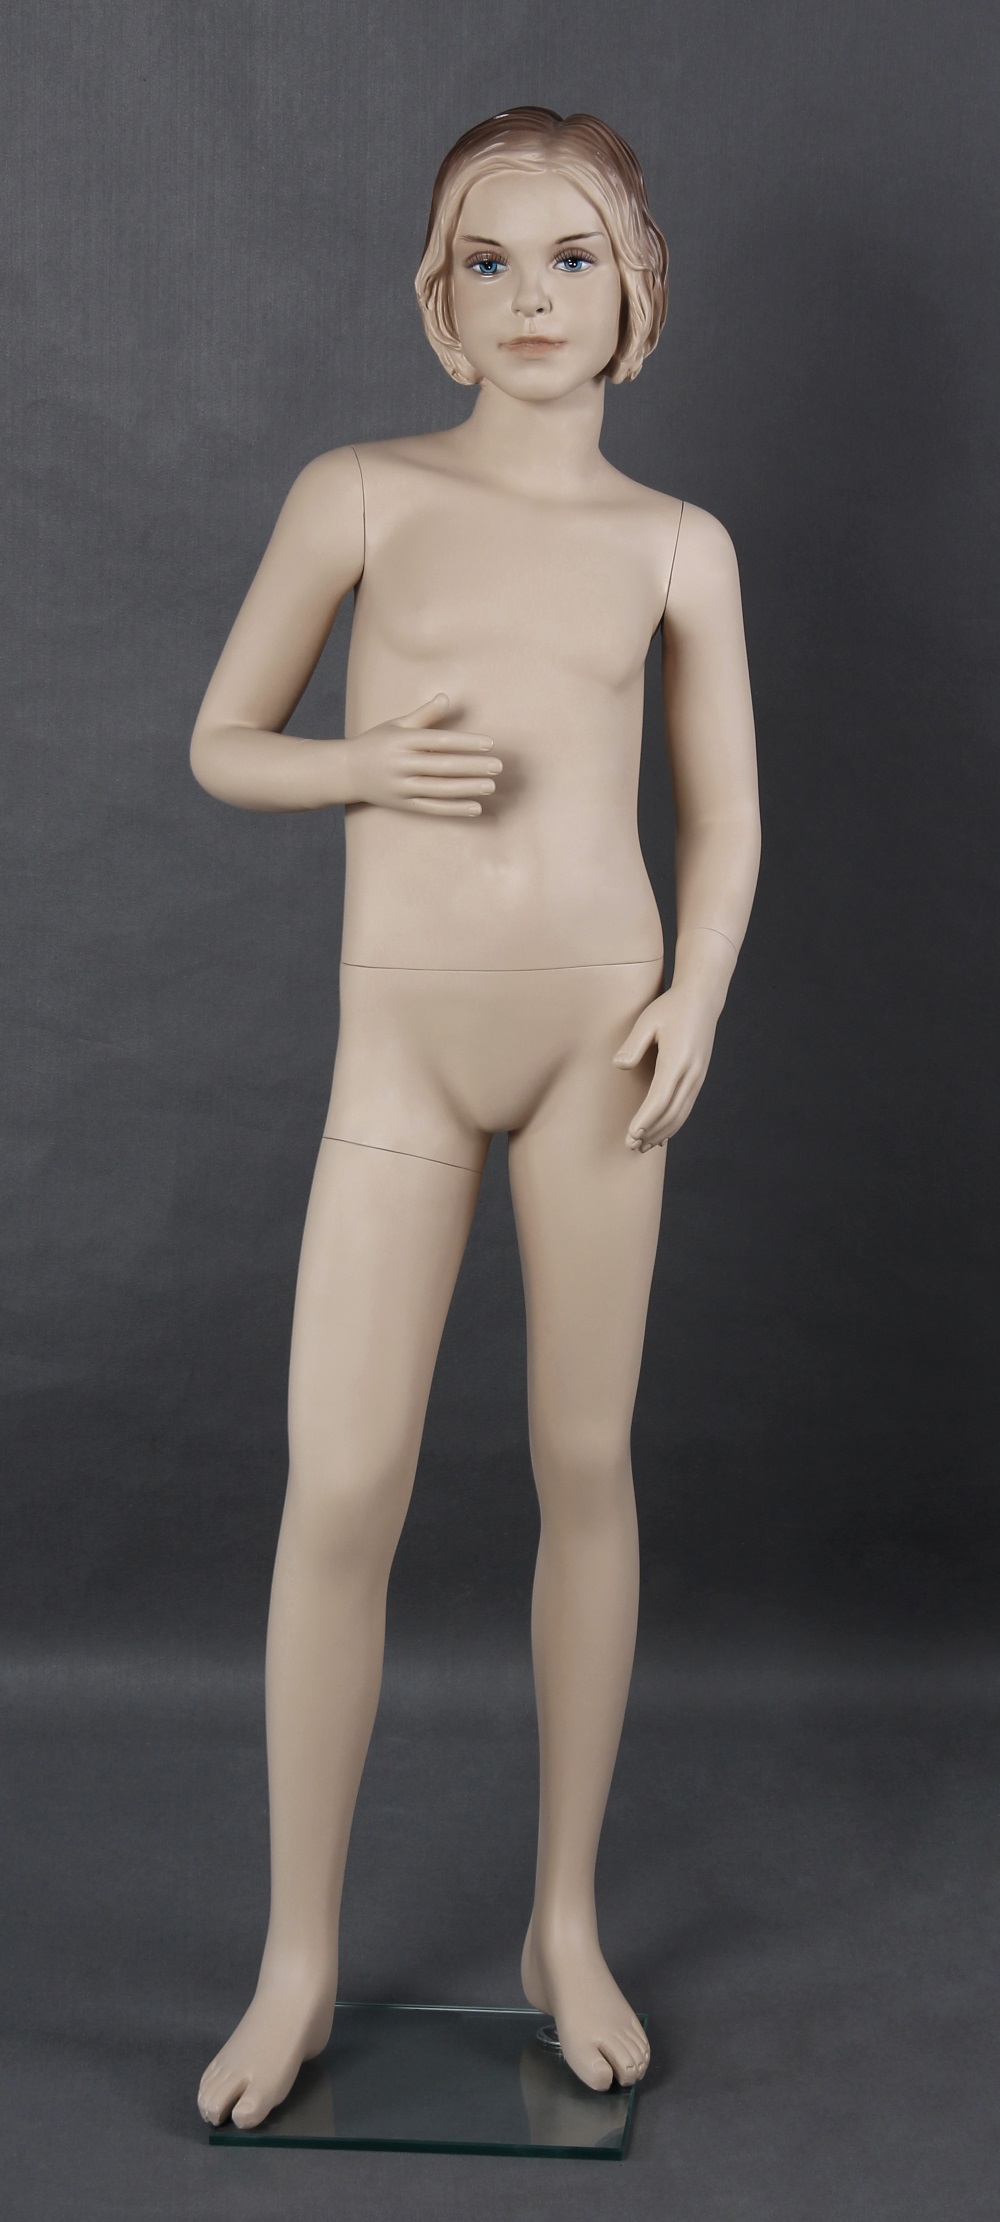 VERMIETUNG Schaufensterfigur "Bodysculpt" Mädchen 10 Jahre hautfarbe